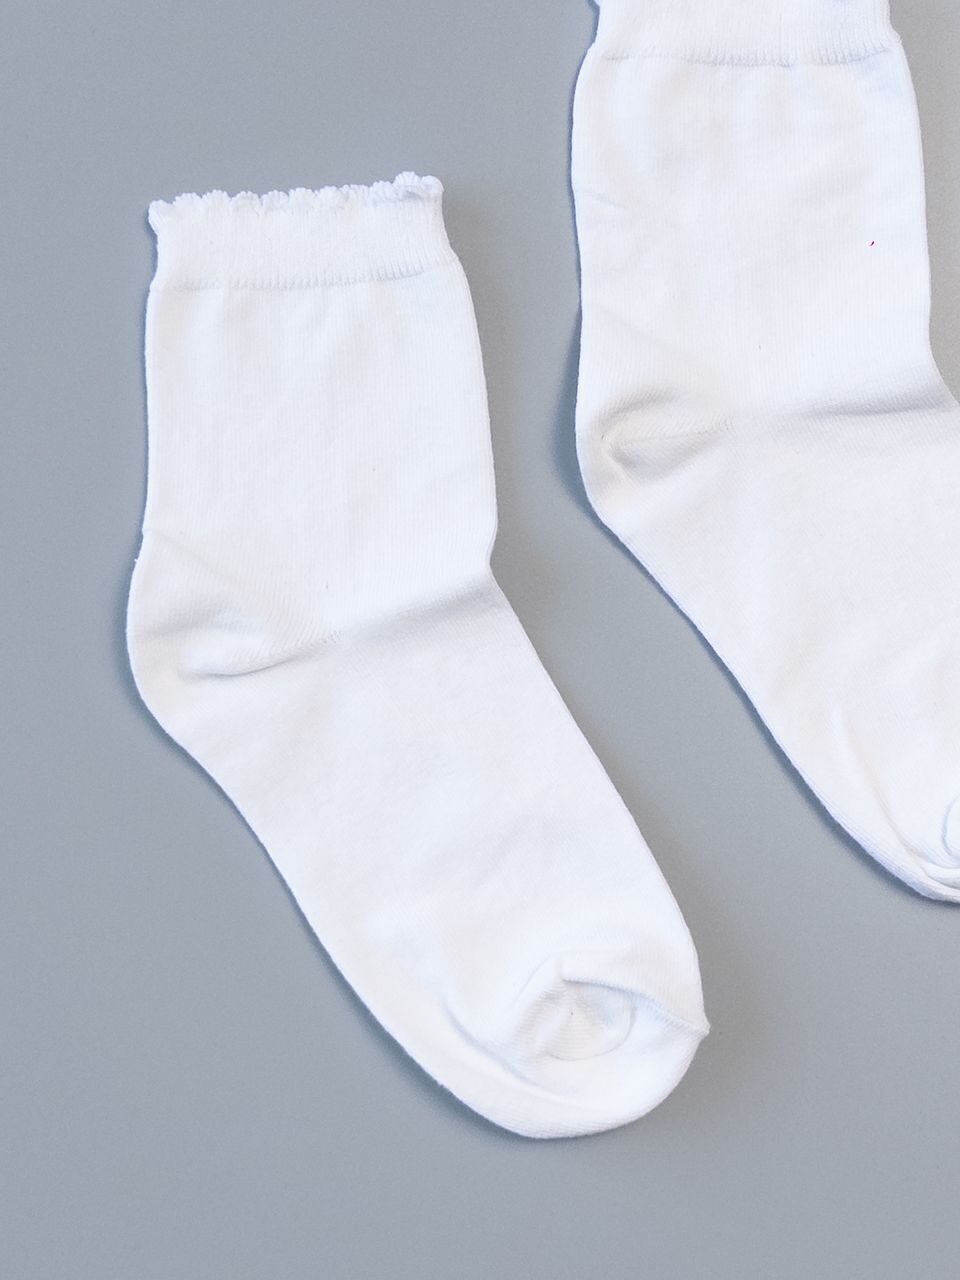 Носки хлопковые белые для девочки стопа 20-22 см 32-34 размер обуви George